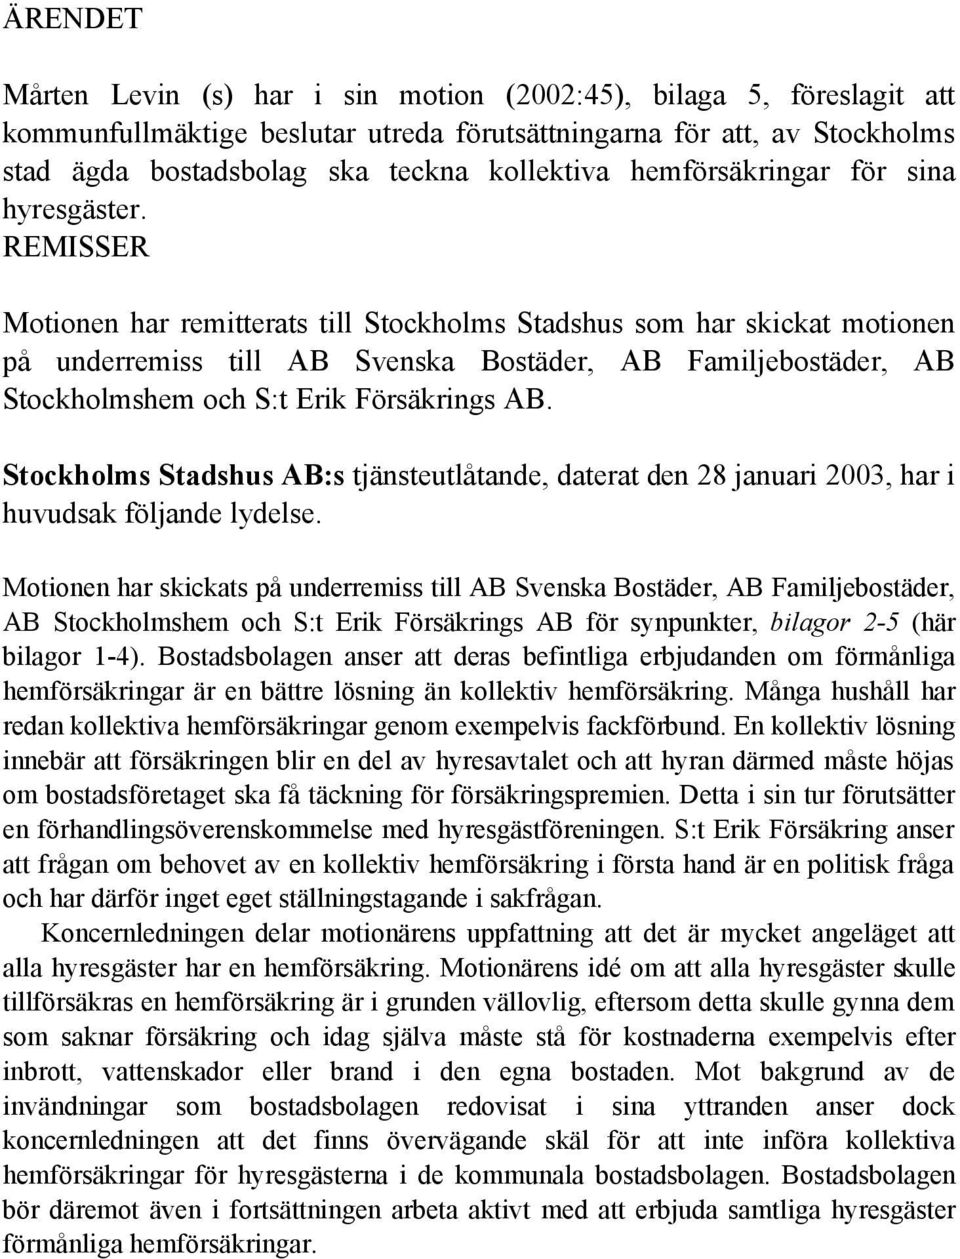 REMISSER Motionen har remitterats till Stockholms Stadshus som har skickat motionen på underremiss till AB Svenska Bostäder, AB Familjebostäder, AB Stockholmshem och S:t Erik Försäkrings AB.